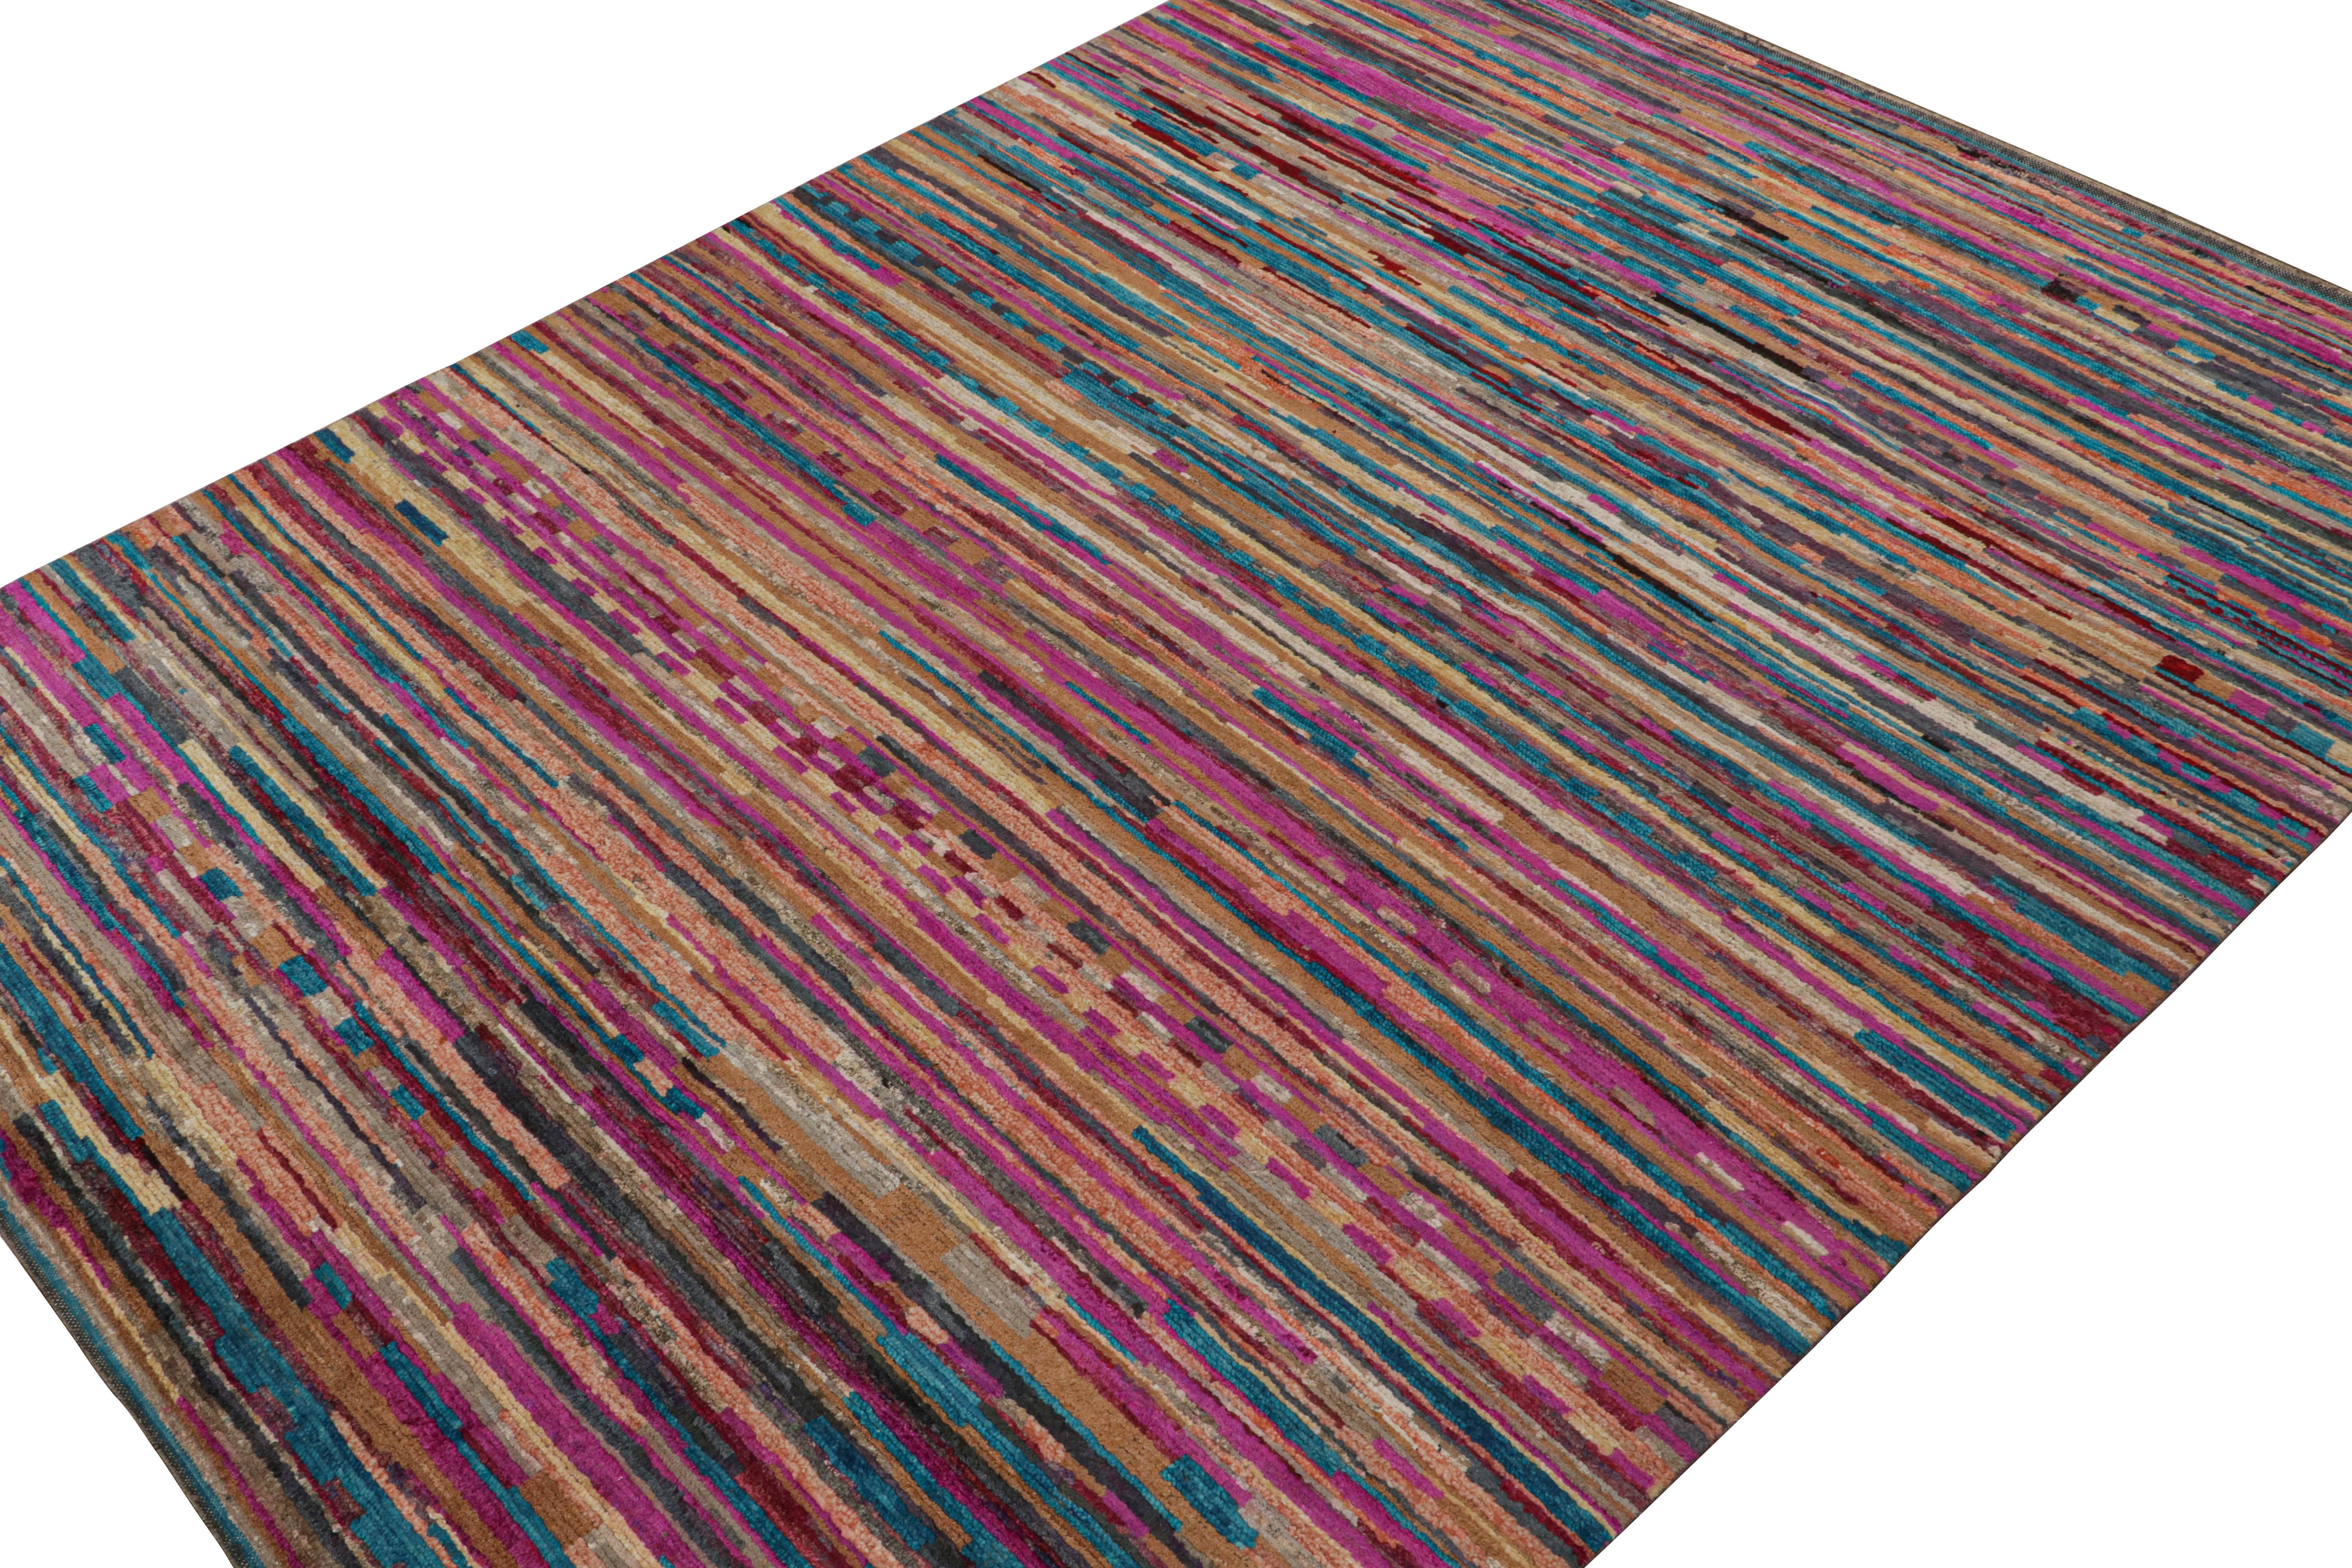 Dieser moderne Teppich im Format 9x12, handgeknüpft aus Wolle und Seide, ist eine neue Ergänzung der marokkanischen Teppichkollektion von Rug & Kilim.

Über das Design: 

Aufmerksame Augen werden die schiere Vielfalt der Farben und den fabelhaften